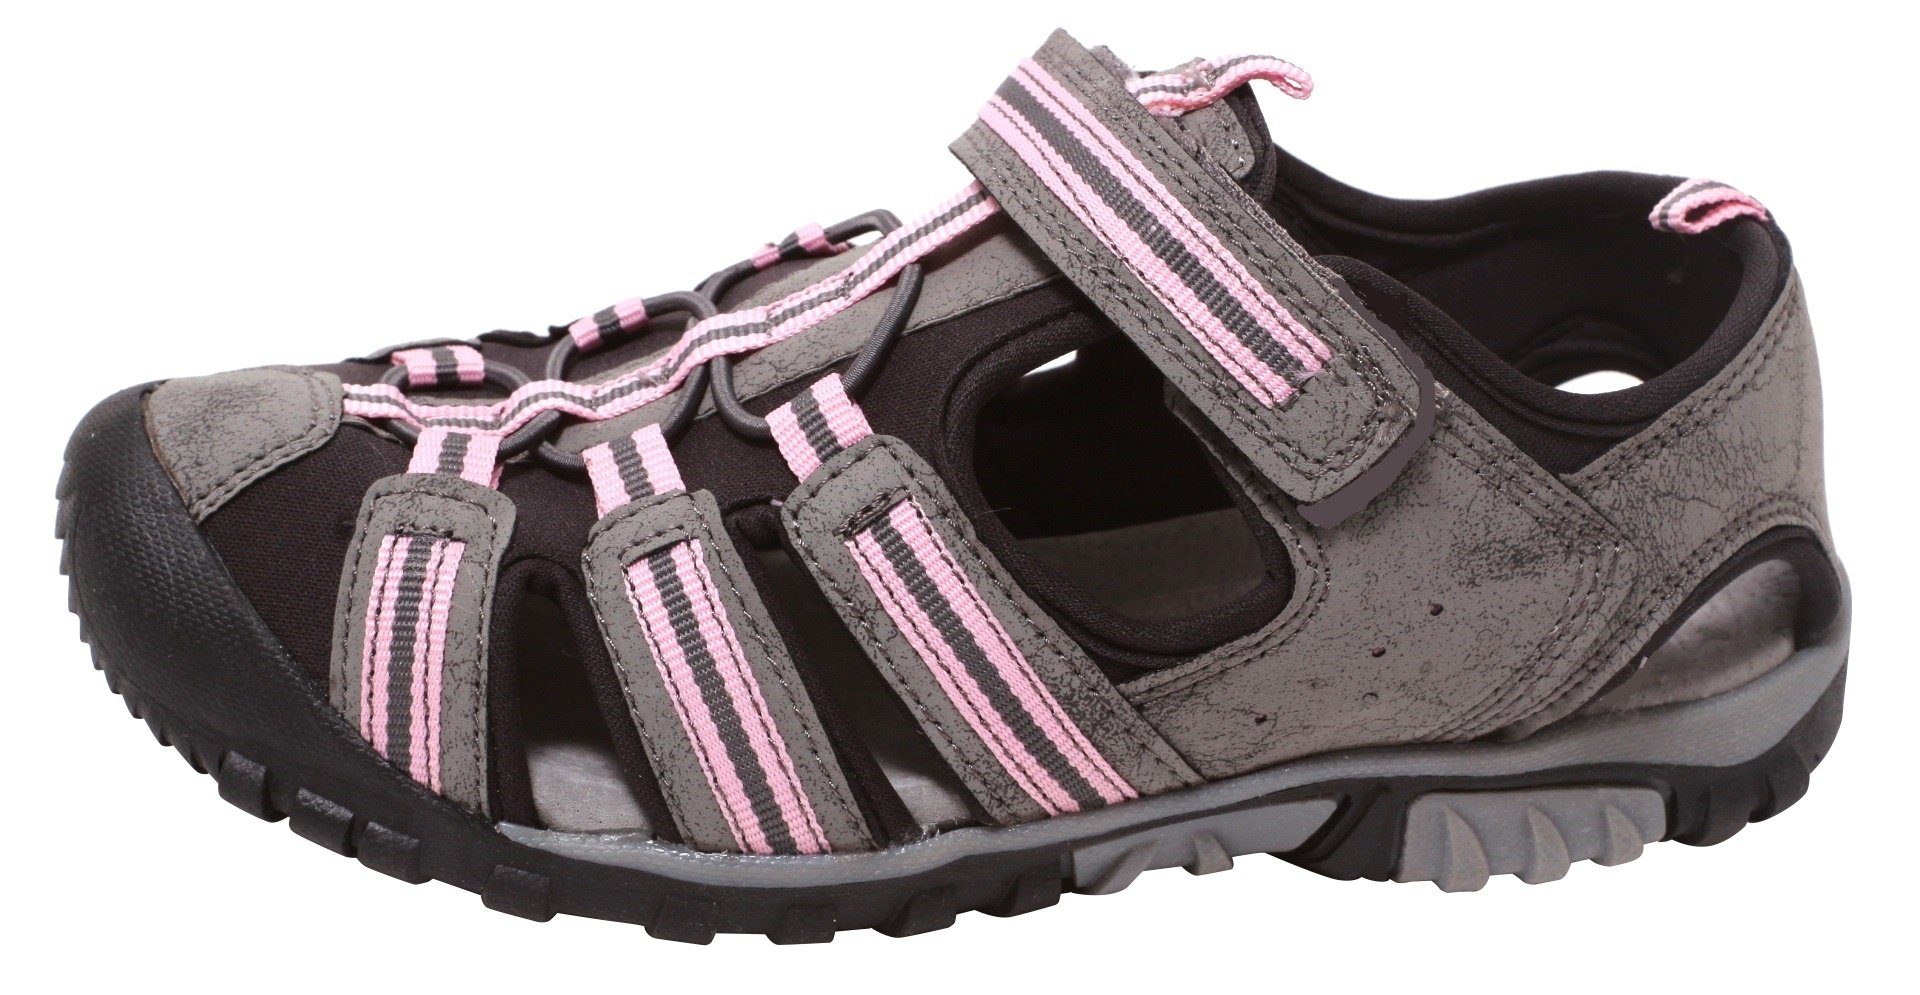 Kinder Outdoor Mädchen Sandale Gr rosa Sport Trekking Sommersandale Schuhe 29-34 Outdoorsandale Zapato